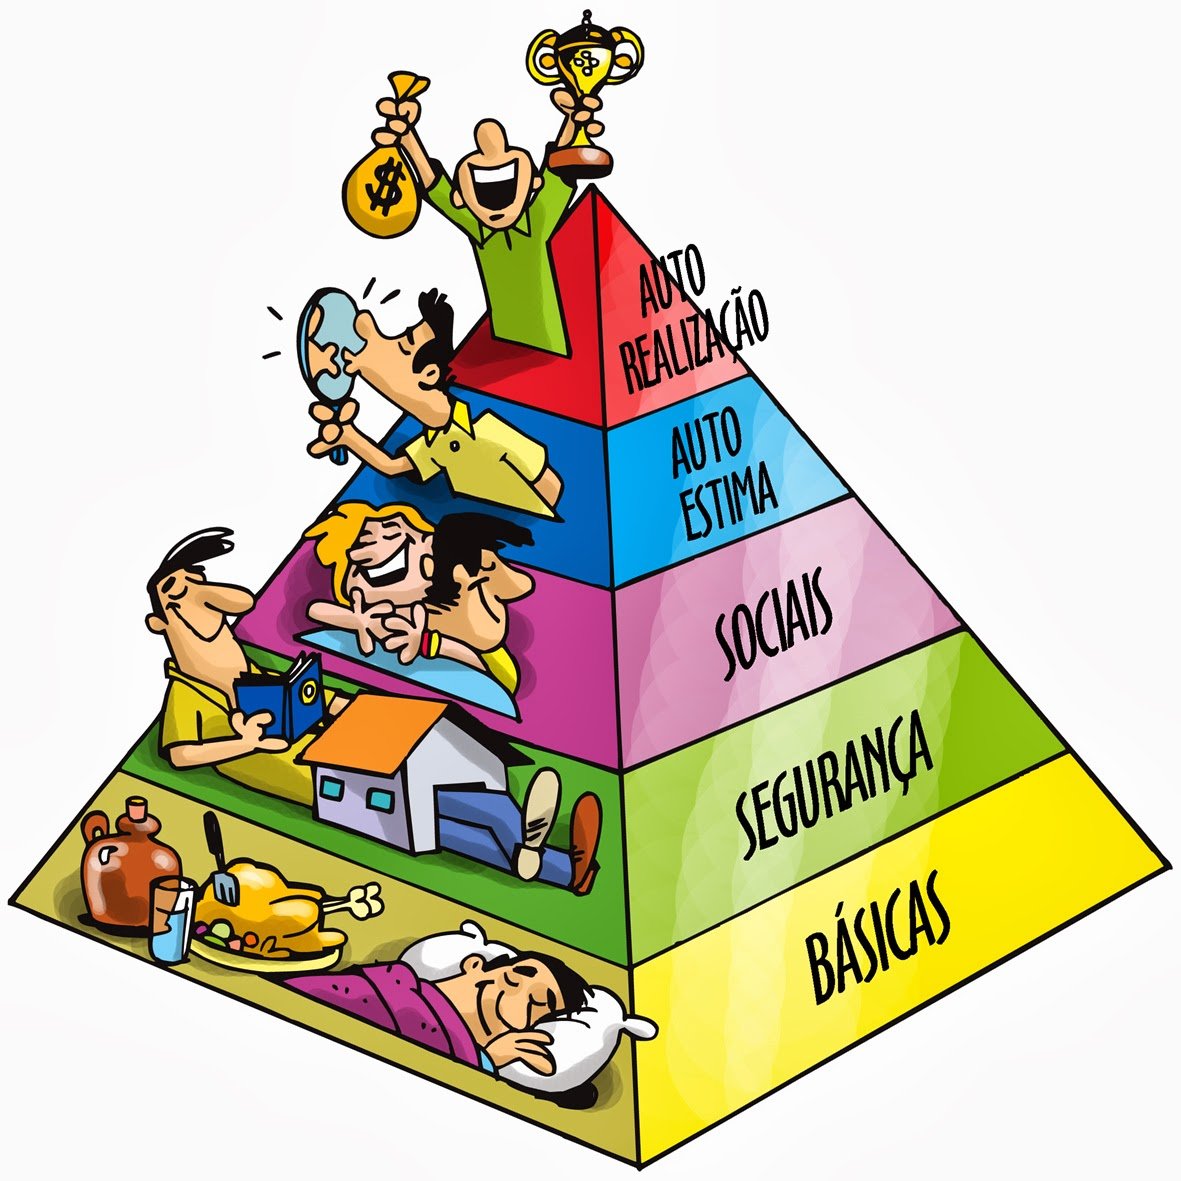 пирамида людей